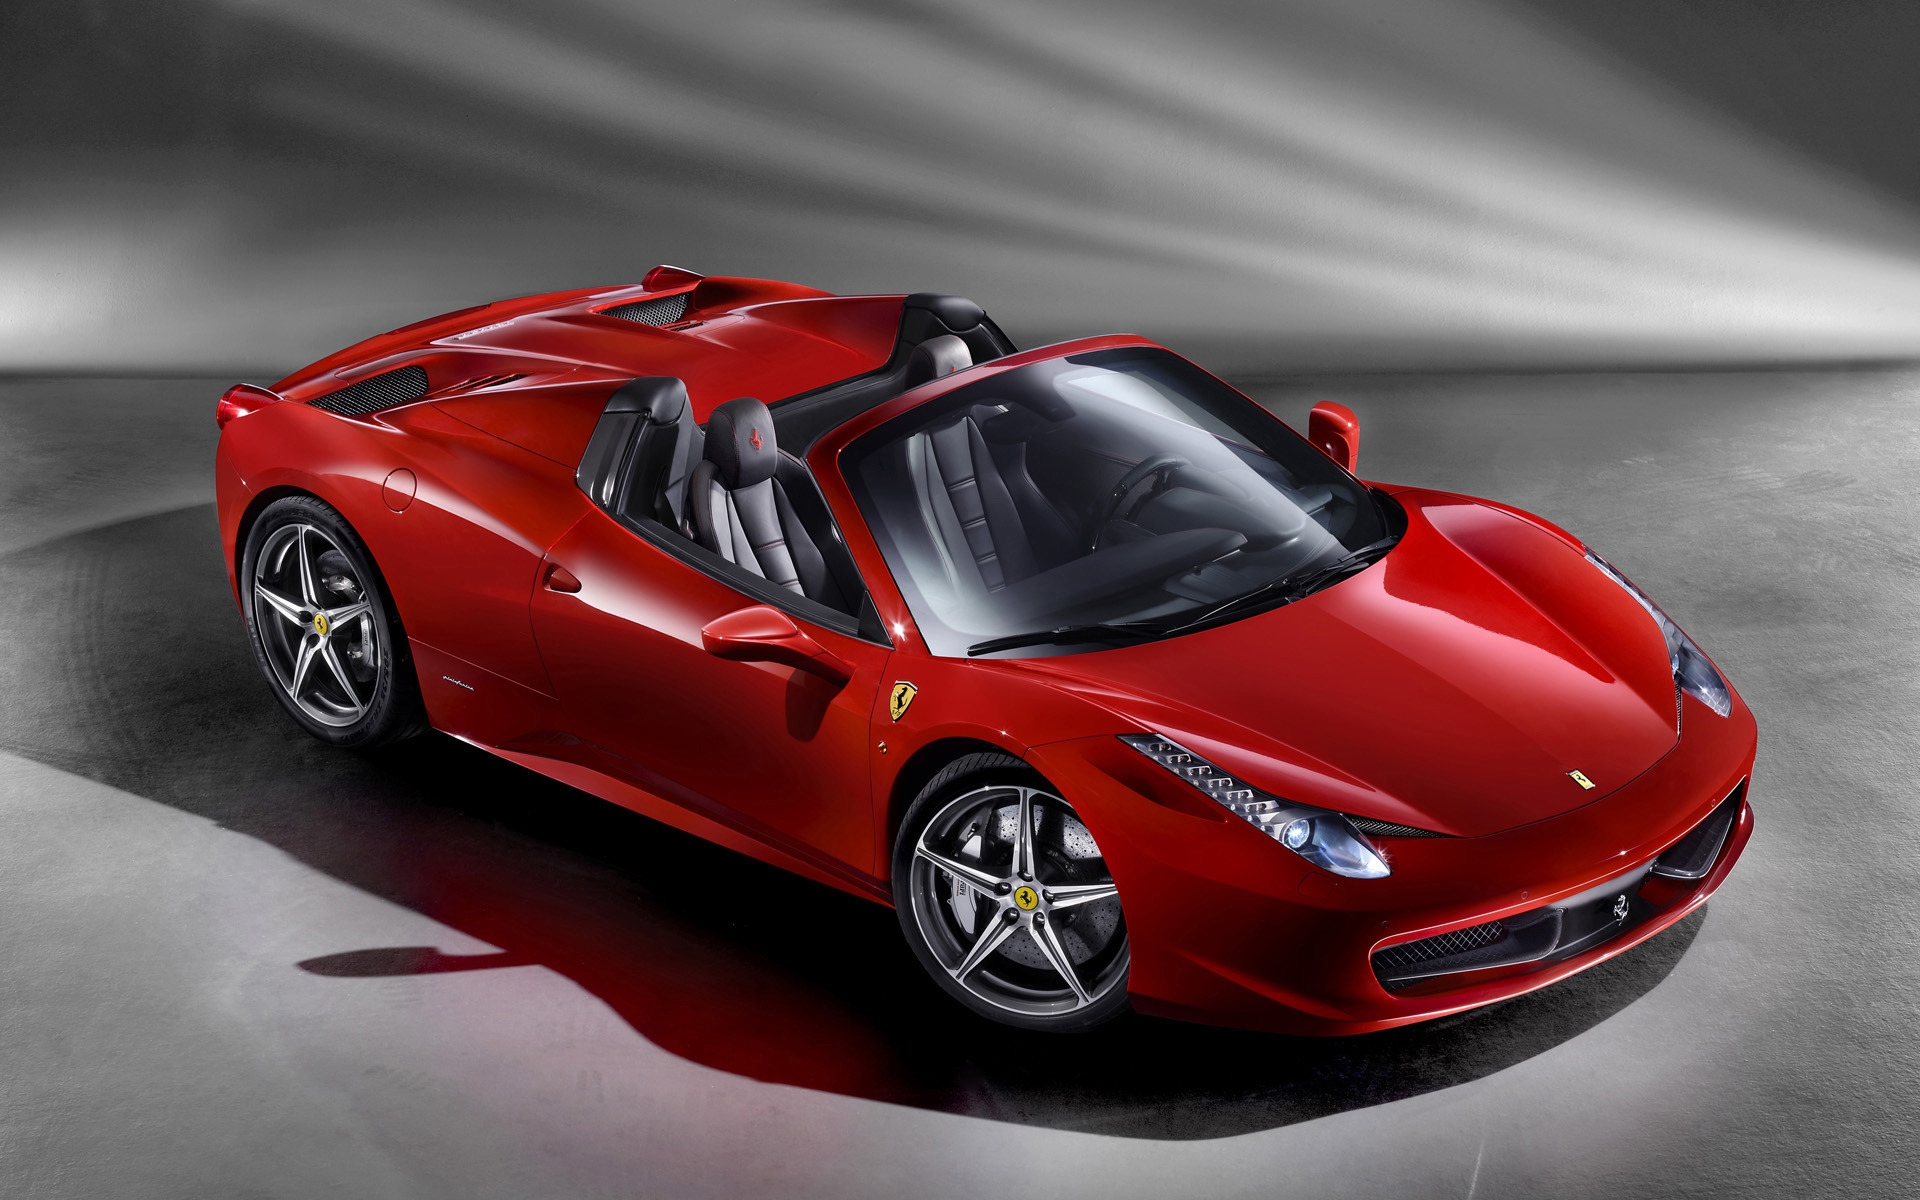 2012 Ferrari 458 Spider Studio for 1920 x 1200 widescreen resolution